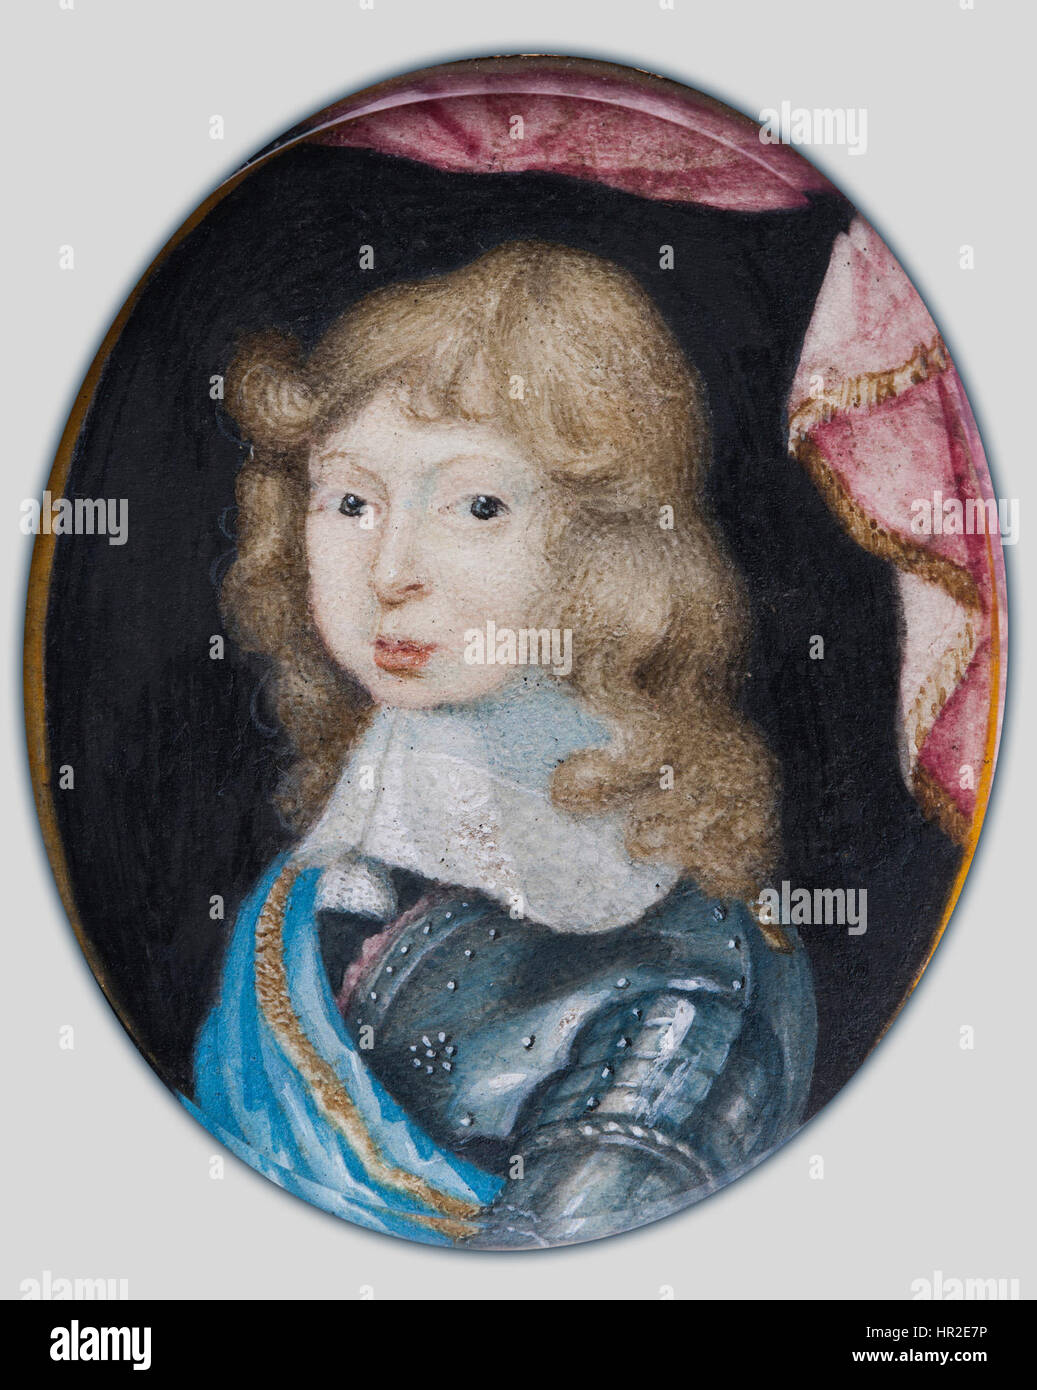 Pierre Signac - Miniatura retrato de Carlos XI, Rey de Suecia 1660-1697, como un niño - Proyecto de arte de Google Foto de stock